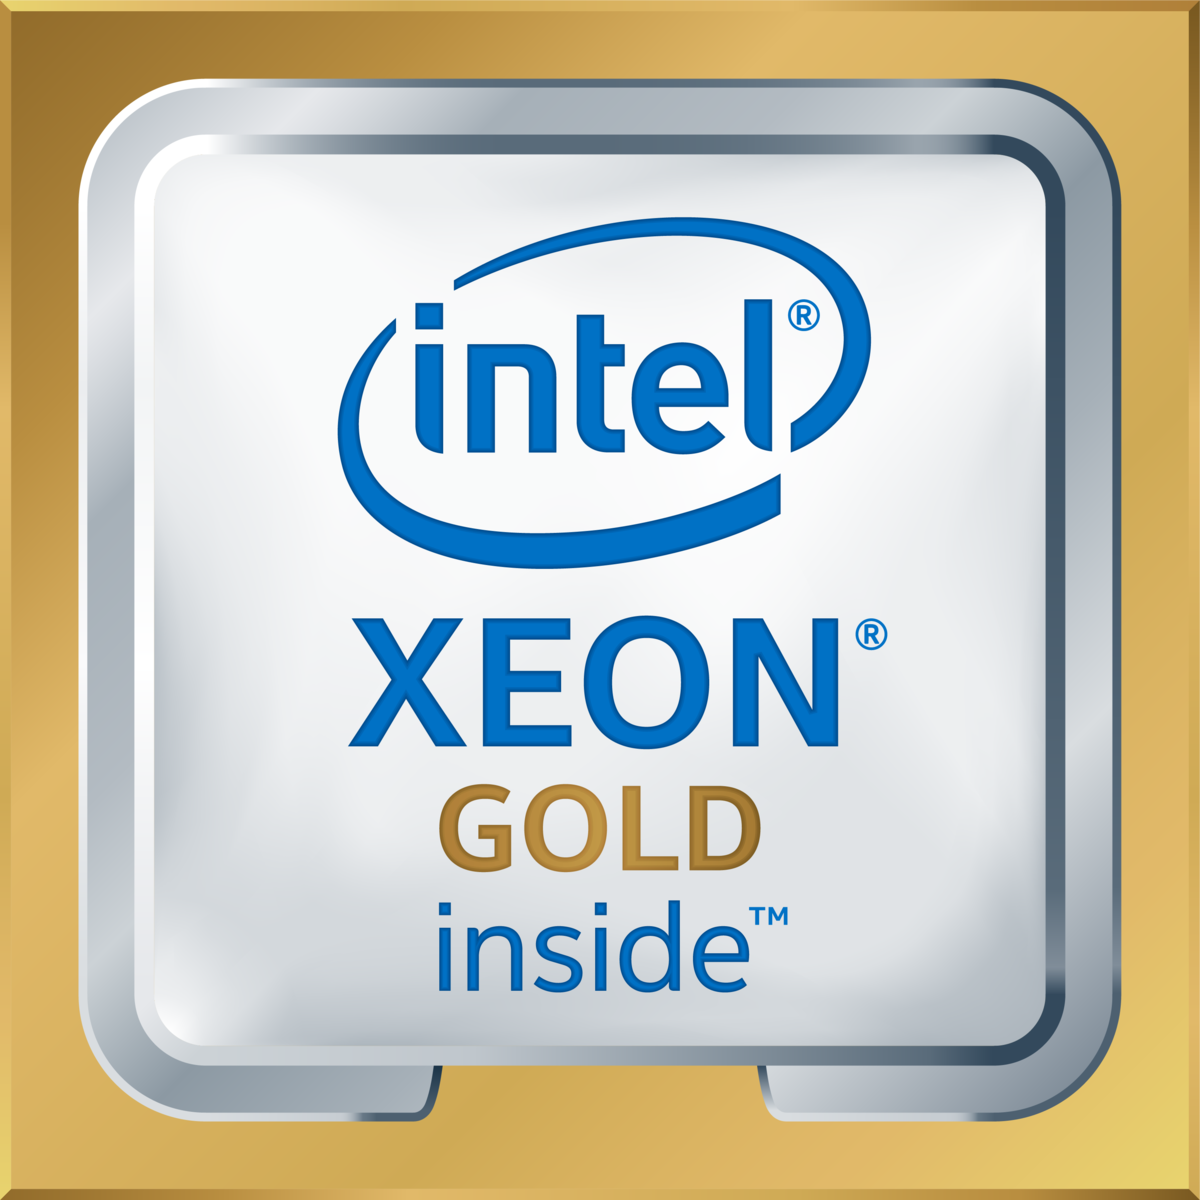 Intel(R) Xeon(R) Gold 6278C CPU @ 2.60GHz's logo